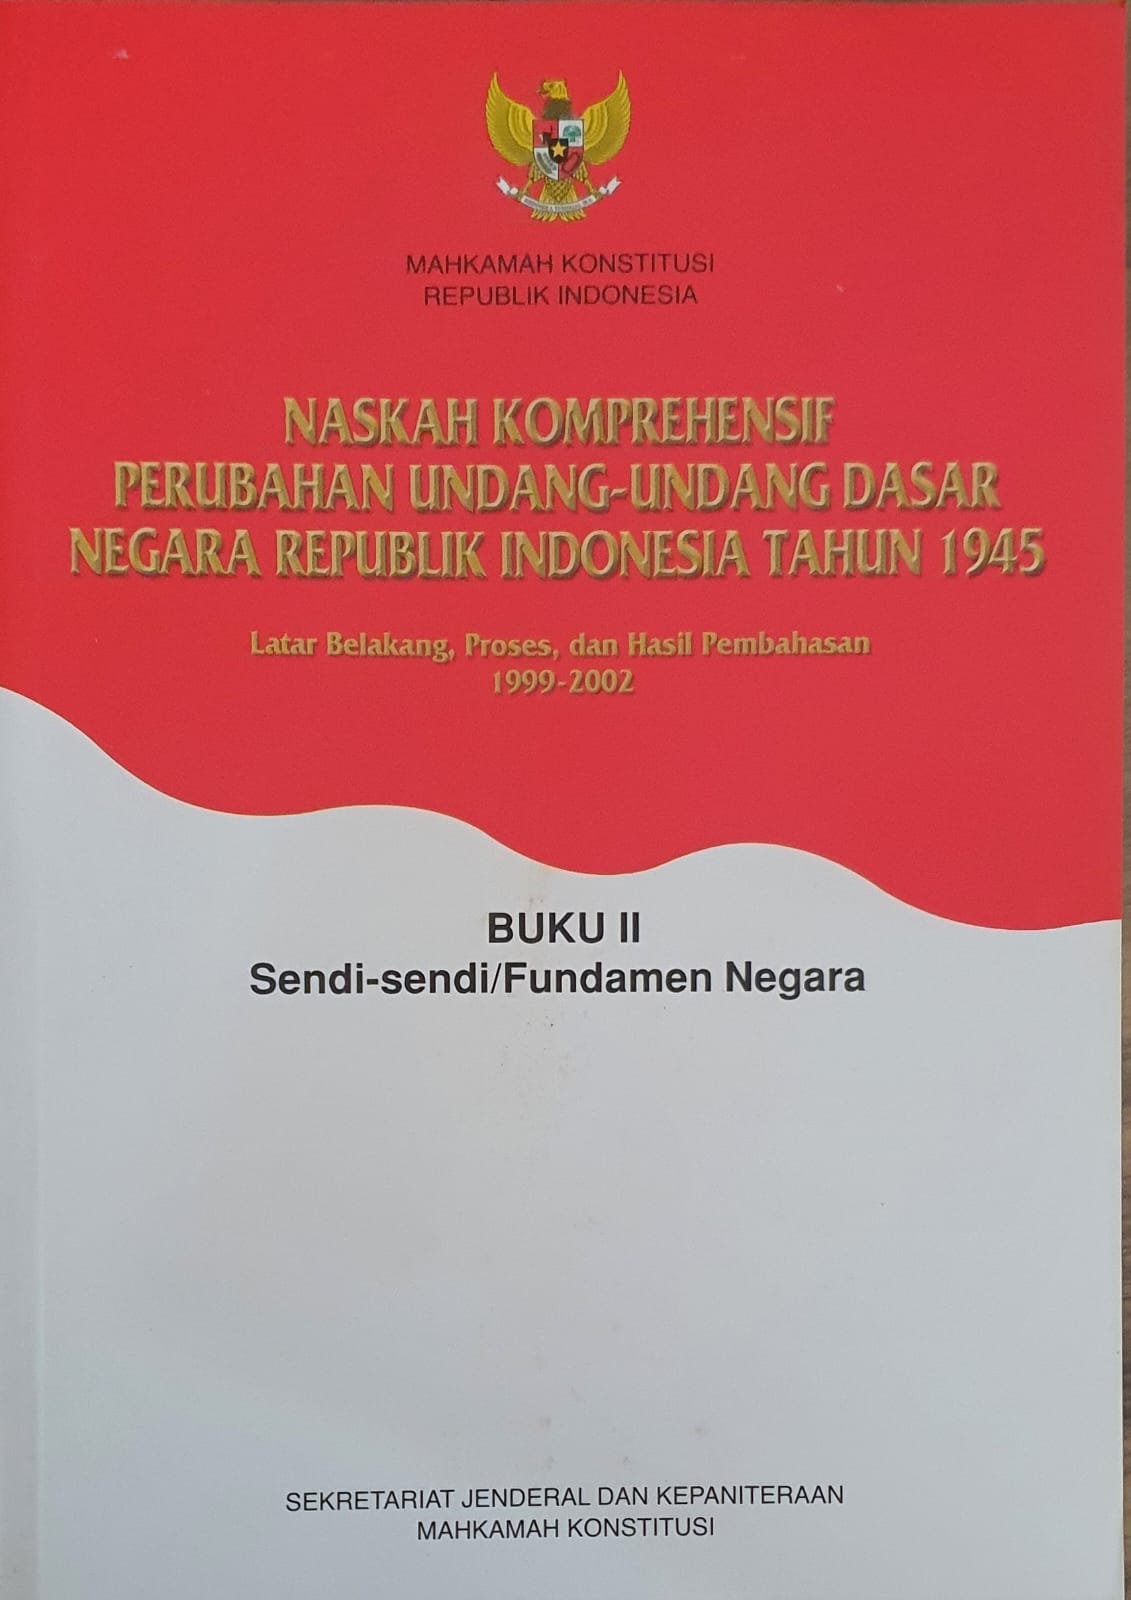 Naskah Komprehensif Perubahan Undang-Undang Dasar Negara Republik Indonesia Tahun 1945 Buku II Sendi Sendi/ Fundamental Negara